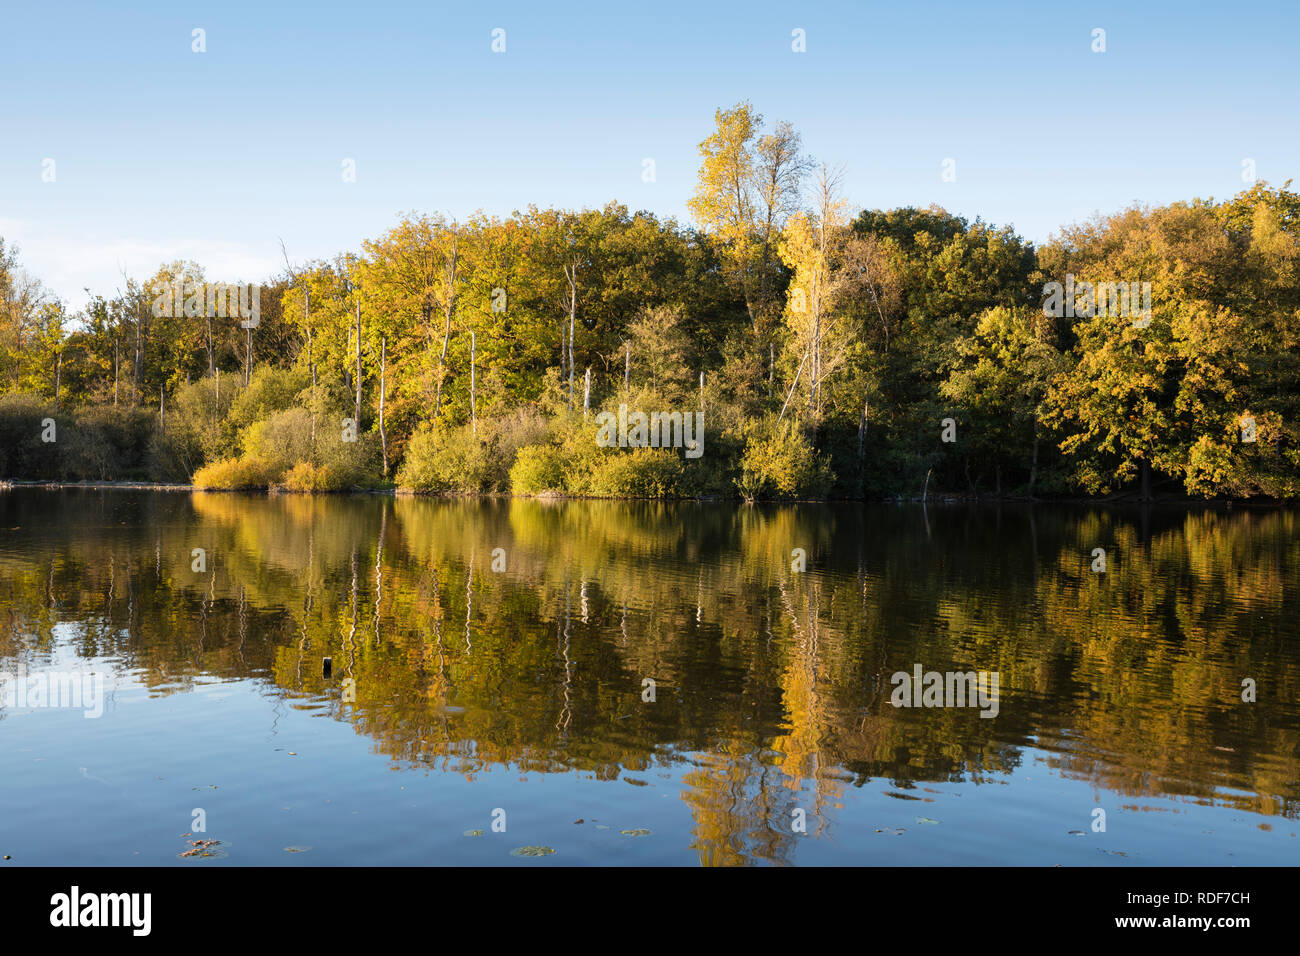 Naturschutzgebiet Beversee See, Bergkamen, Ruhrgebiet, Nordrhein-Westfalen, Deutschland, Europa Stockfoto